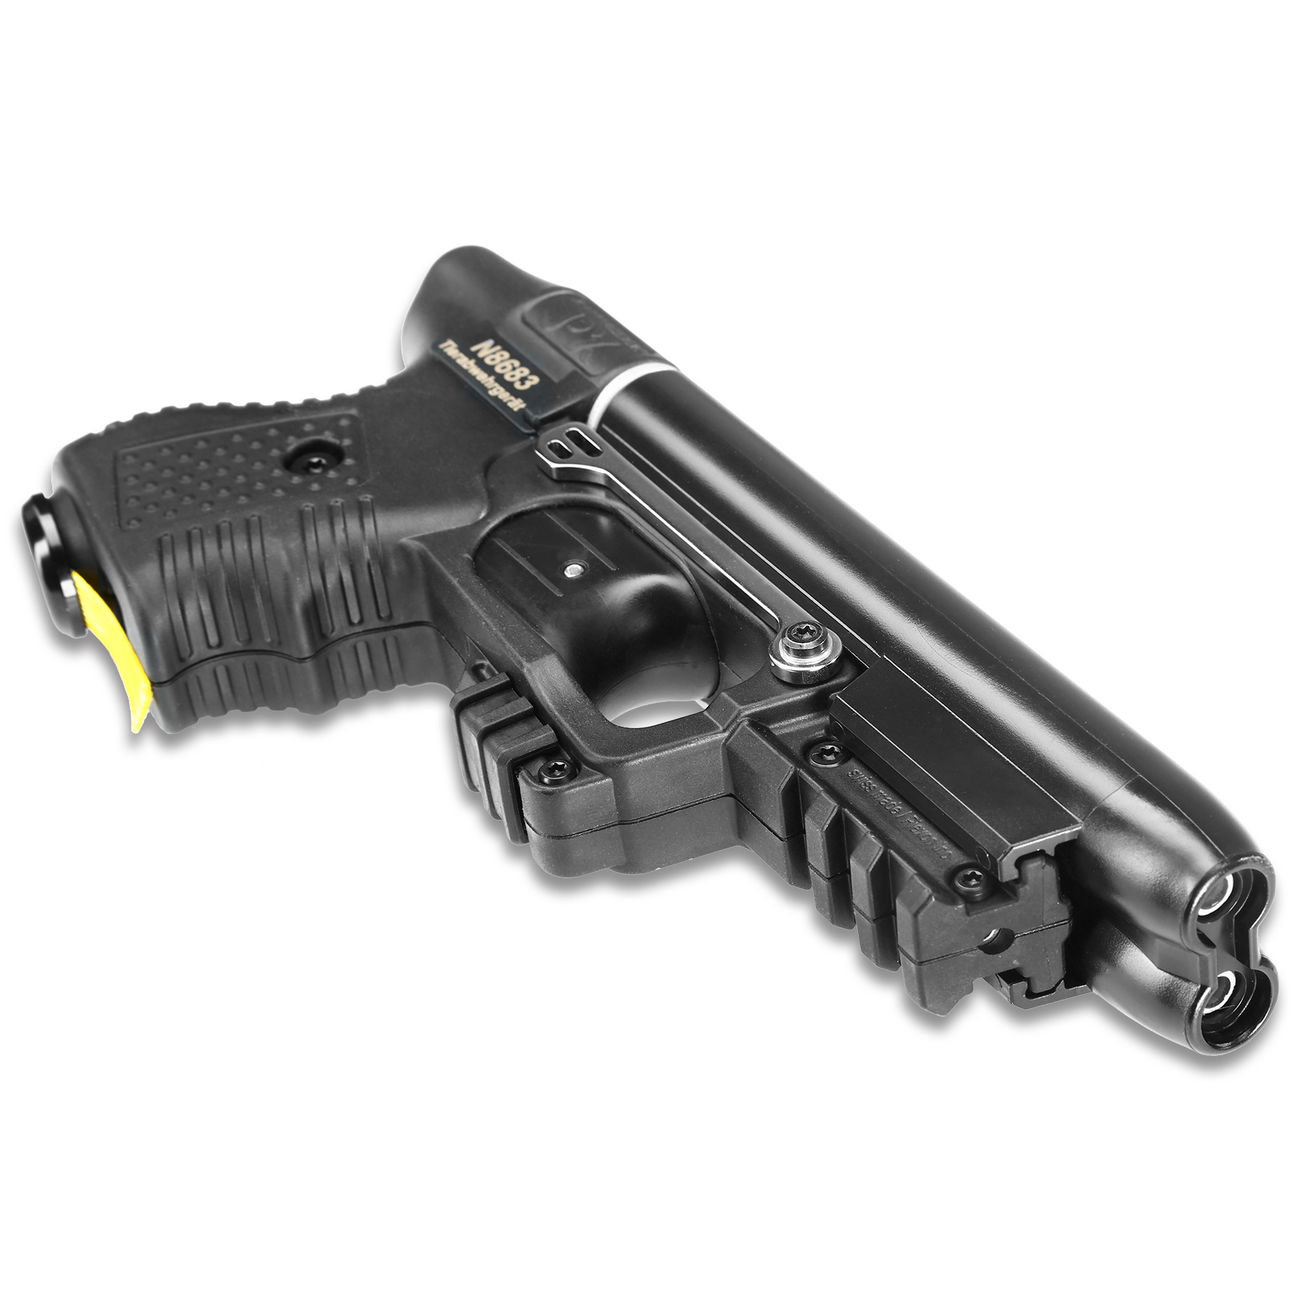 JPX Jet Protector Pfefferpistole zur Tierabwehrgerät mit integrierter Lasereinheit Bild 1